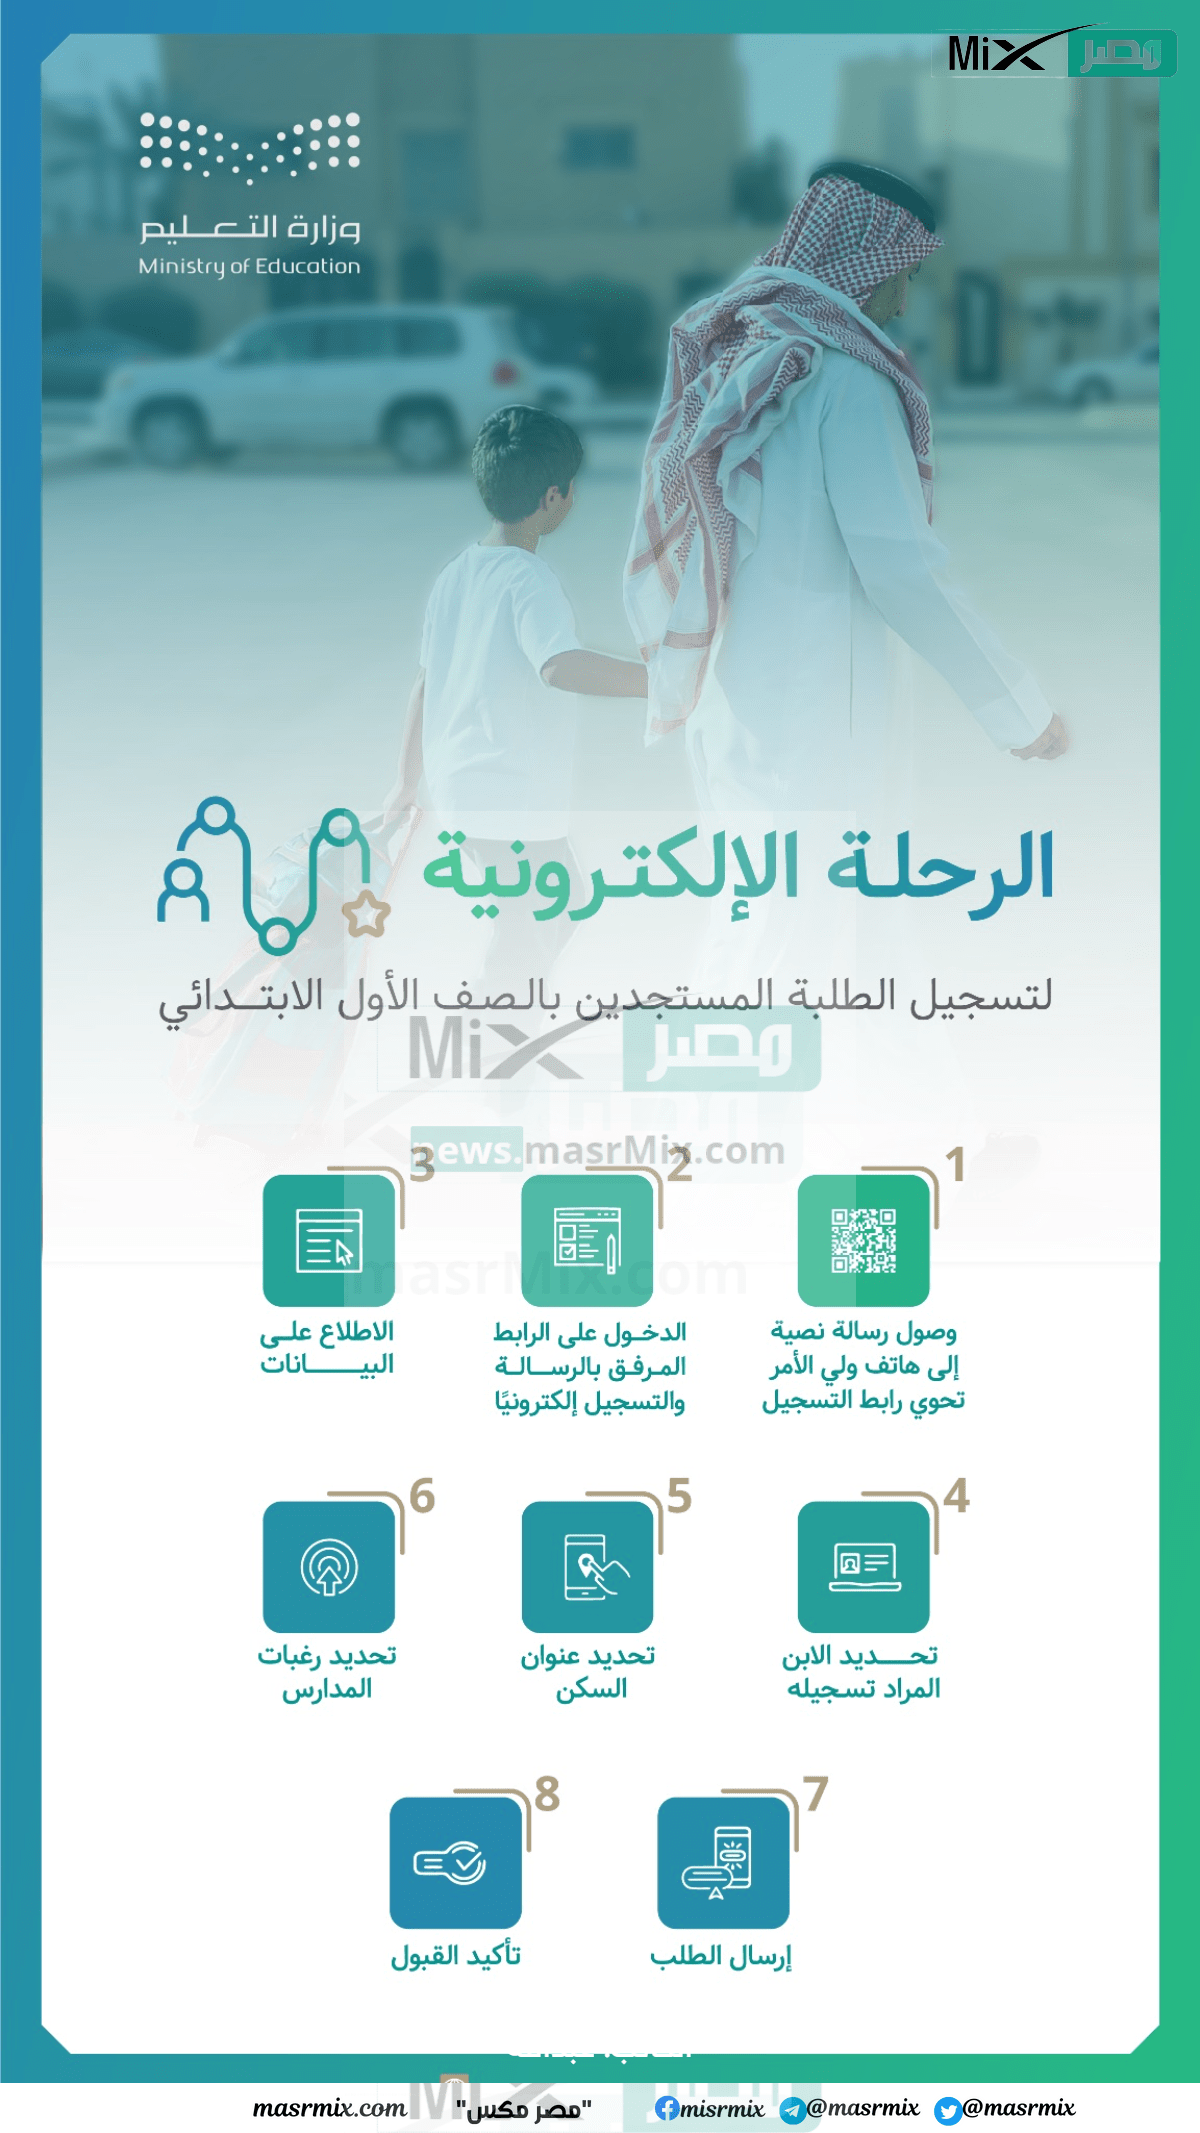 التعليم السعودي يكشف عن تسجيل طلاب المرحلة الابتدائية - مدونة التقنية العربية